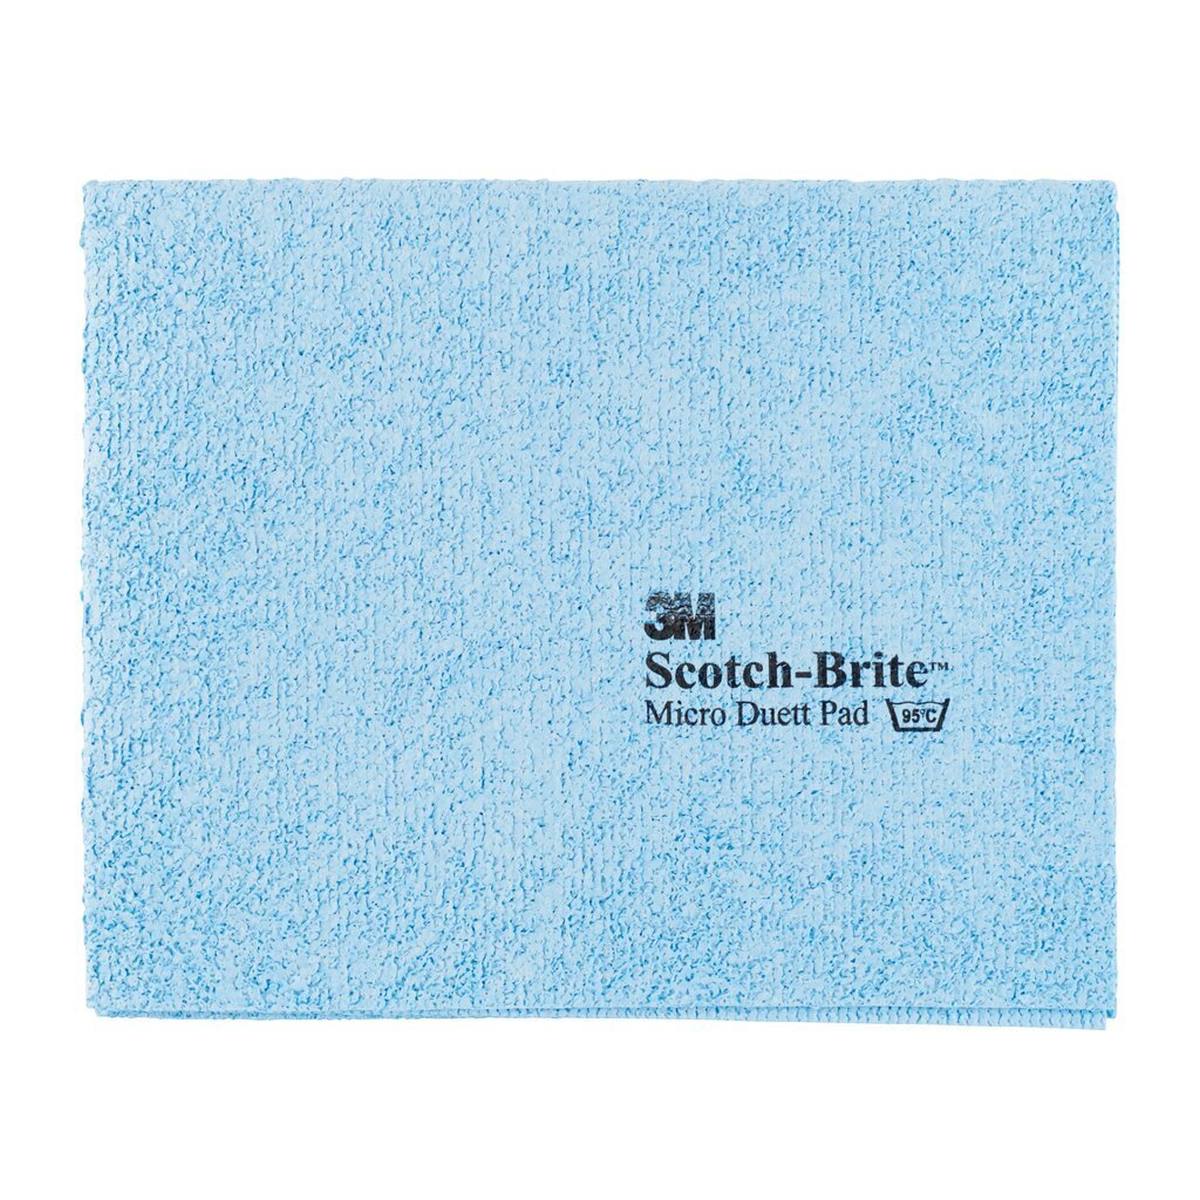 3M Scotch-Brite Micro Duett microfibre cloth, blue, without print, 320 mm x 400 mm